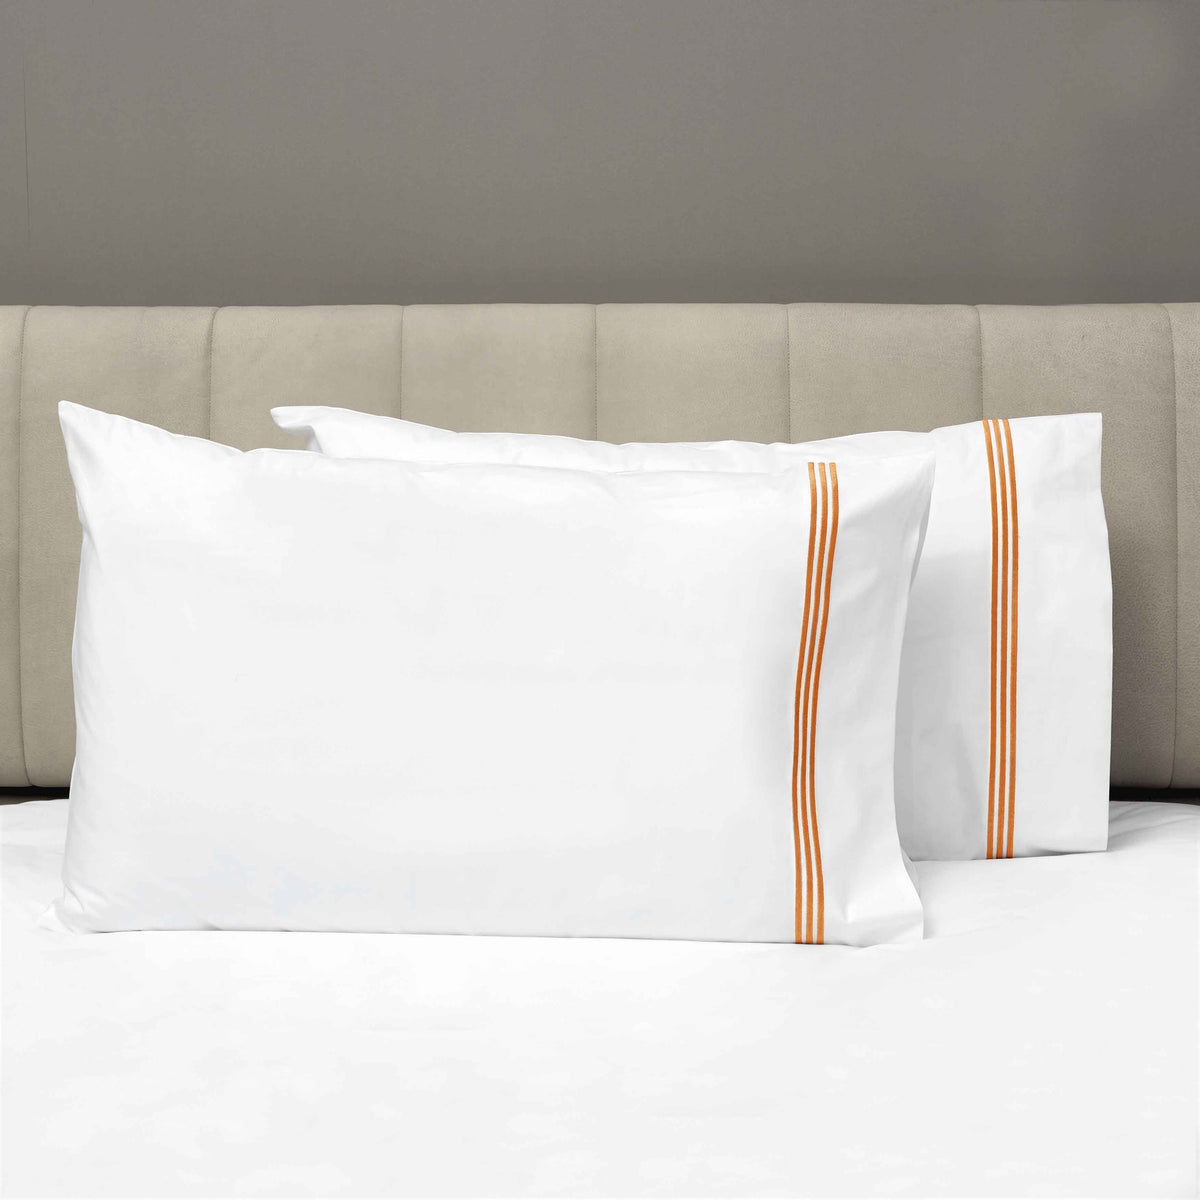 Pair of Pillowcases of Signoria Platinum Percale Bedding in White/Rust Color